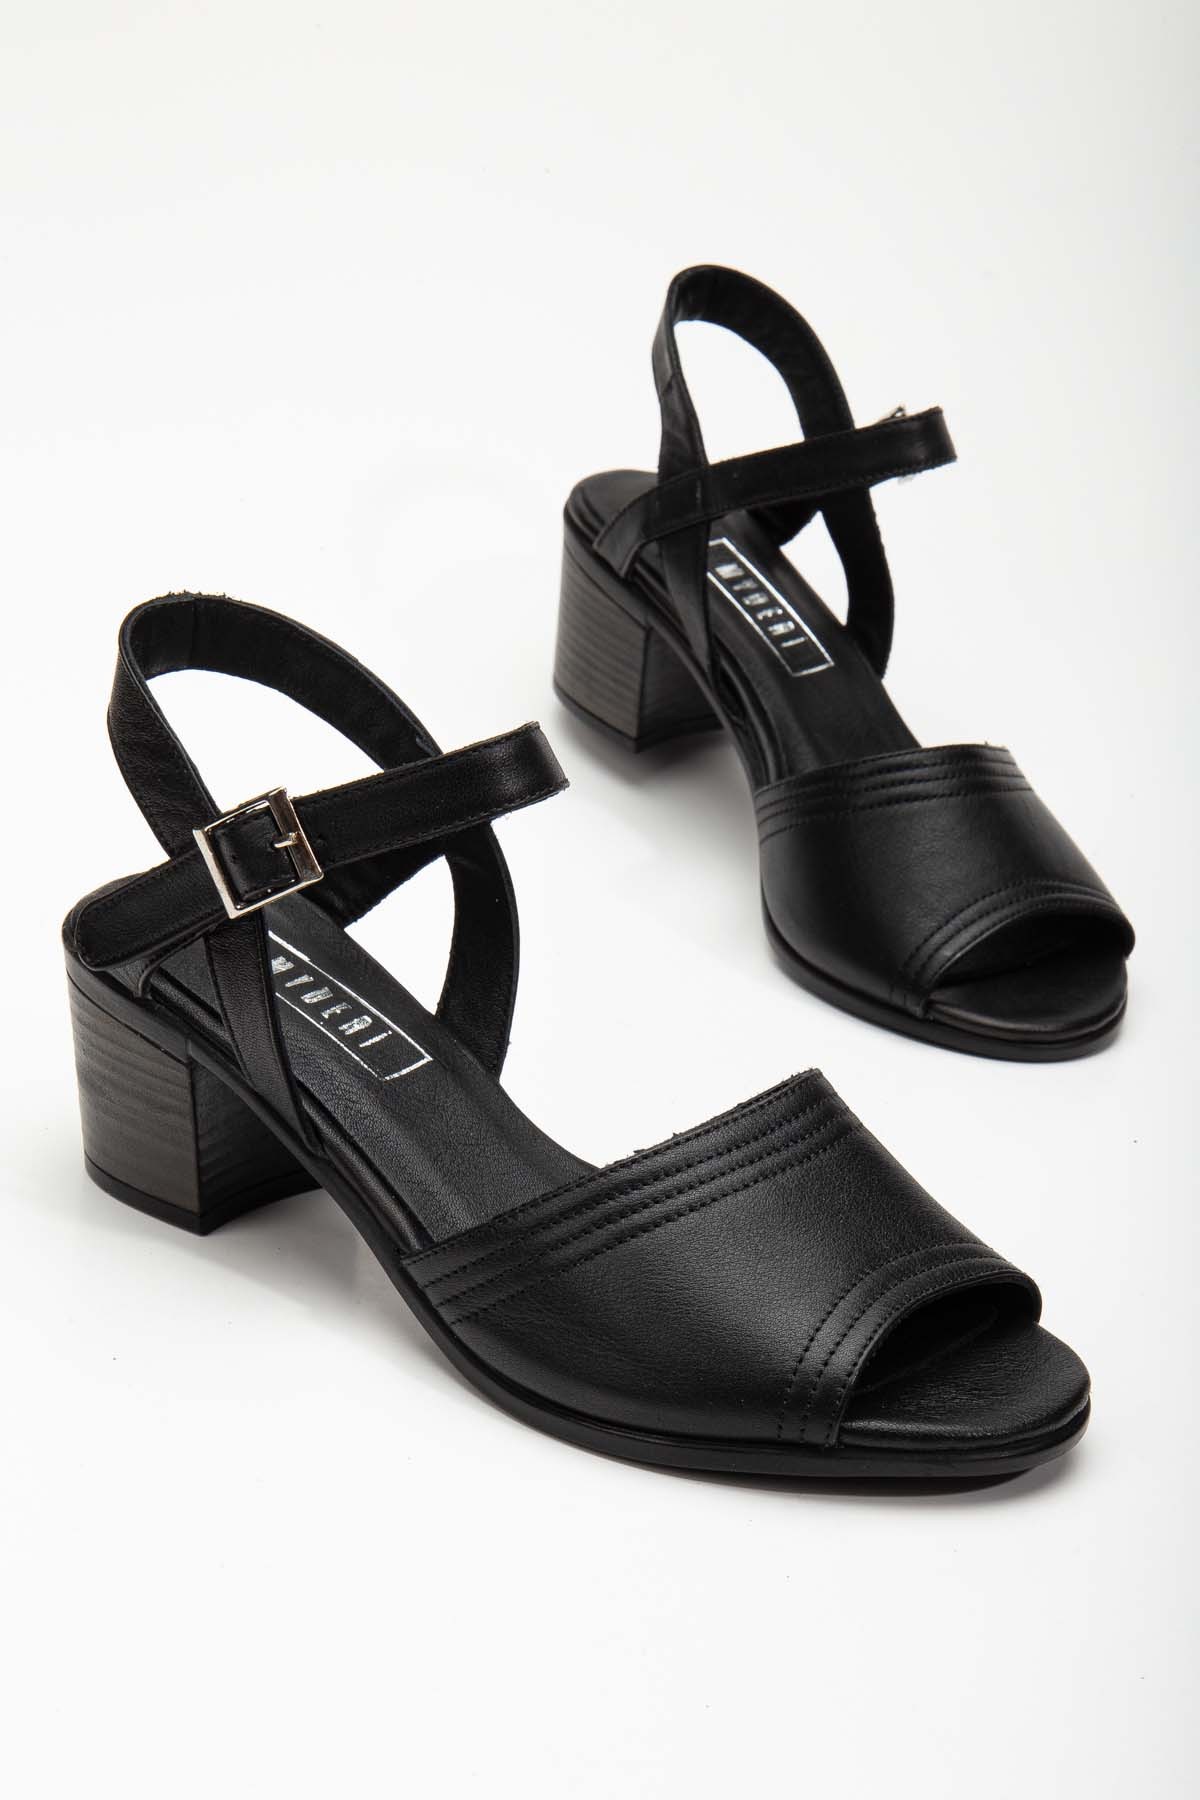 Jolıe Hakiki Deri Tek Bantlı Kadın Topuklu Ayakkabı (B2186 ) - Siyah